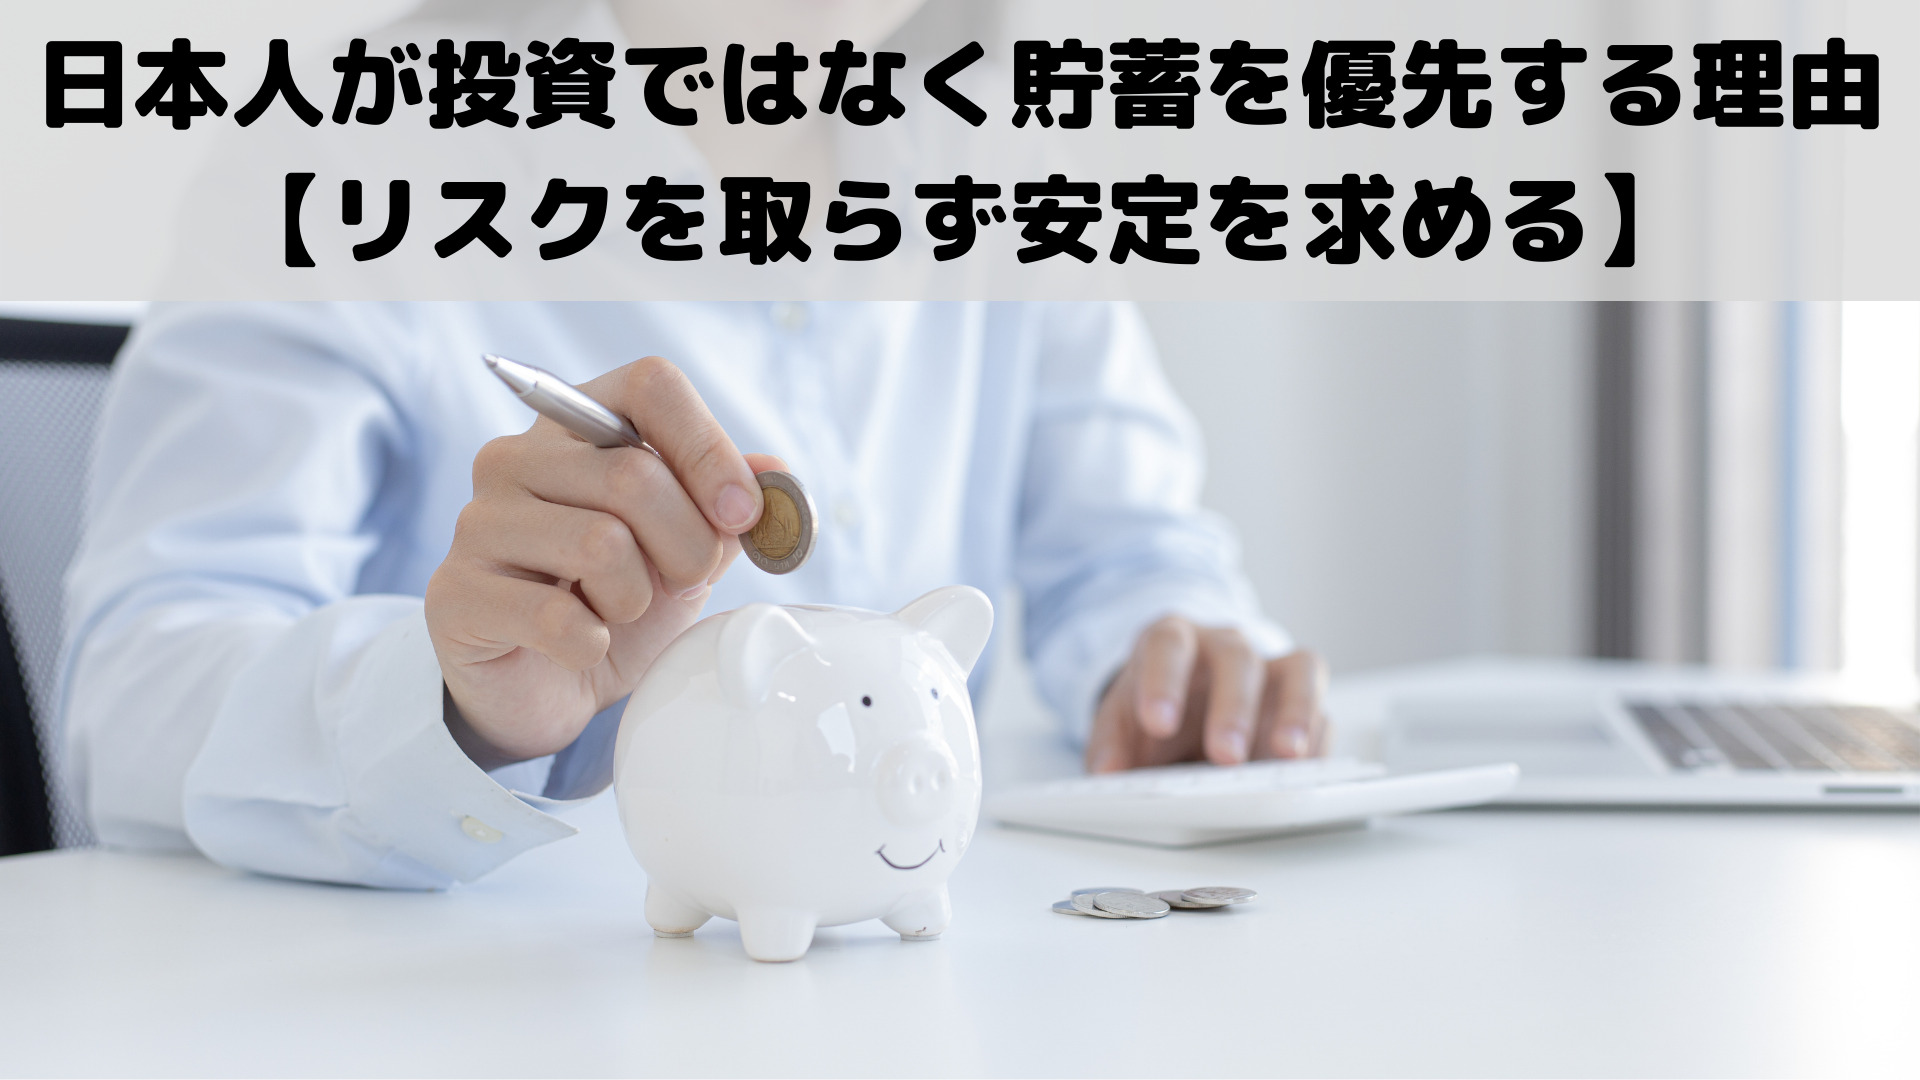 日本人が投資ではなく貯蓄を優先する理由【リスクを取らず安定を求める】